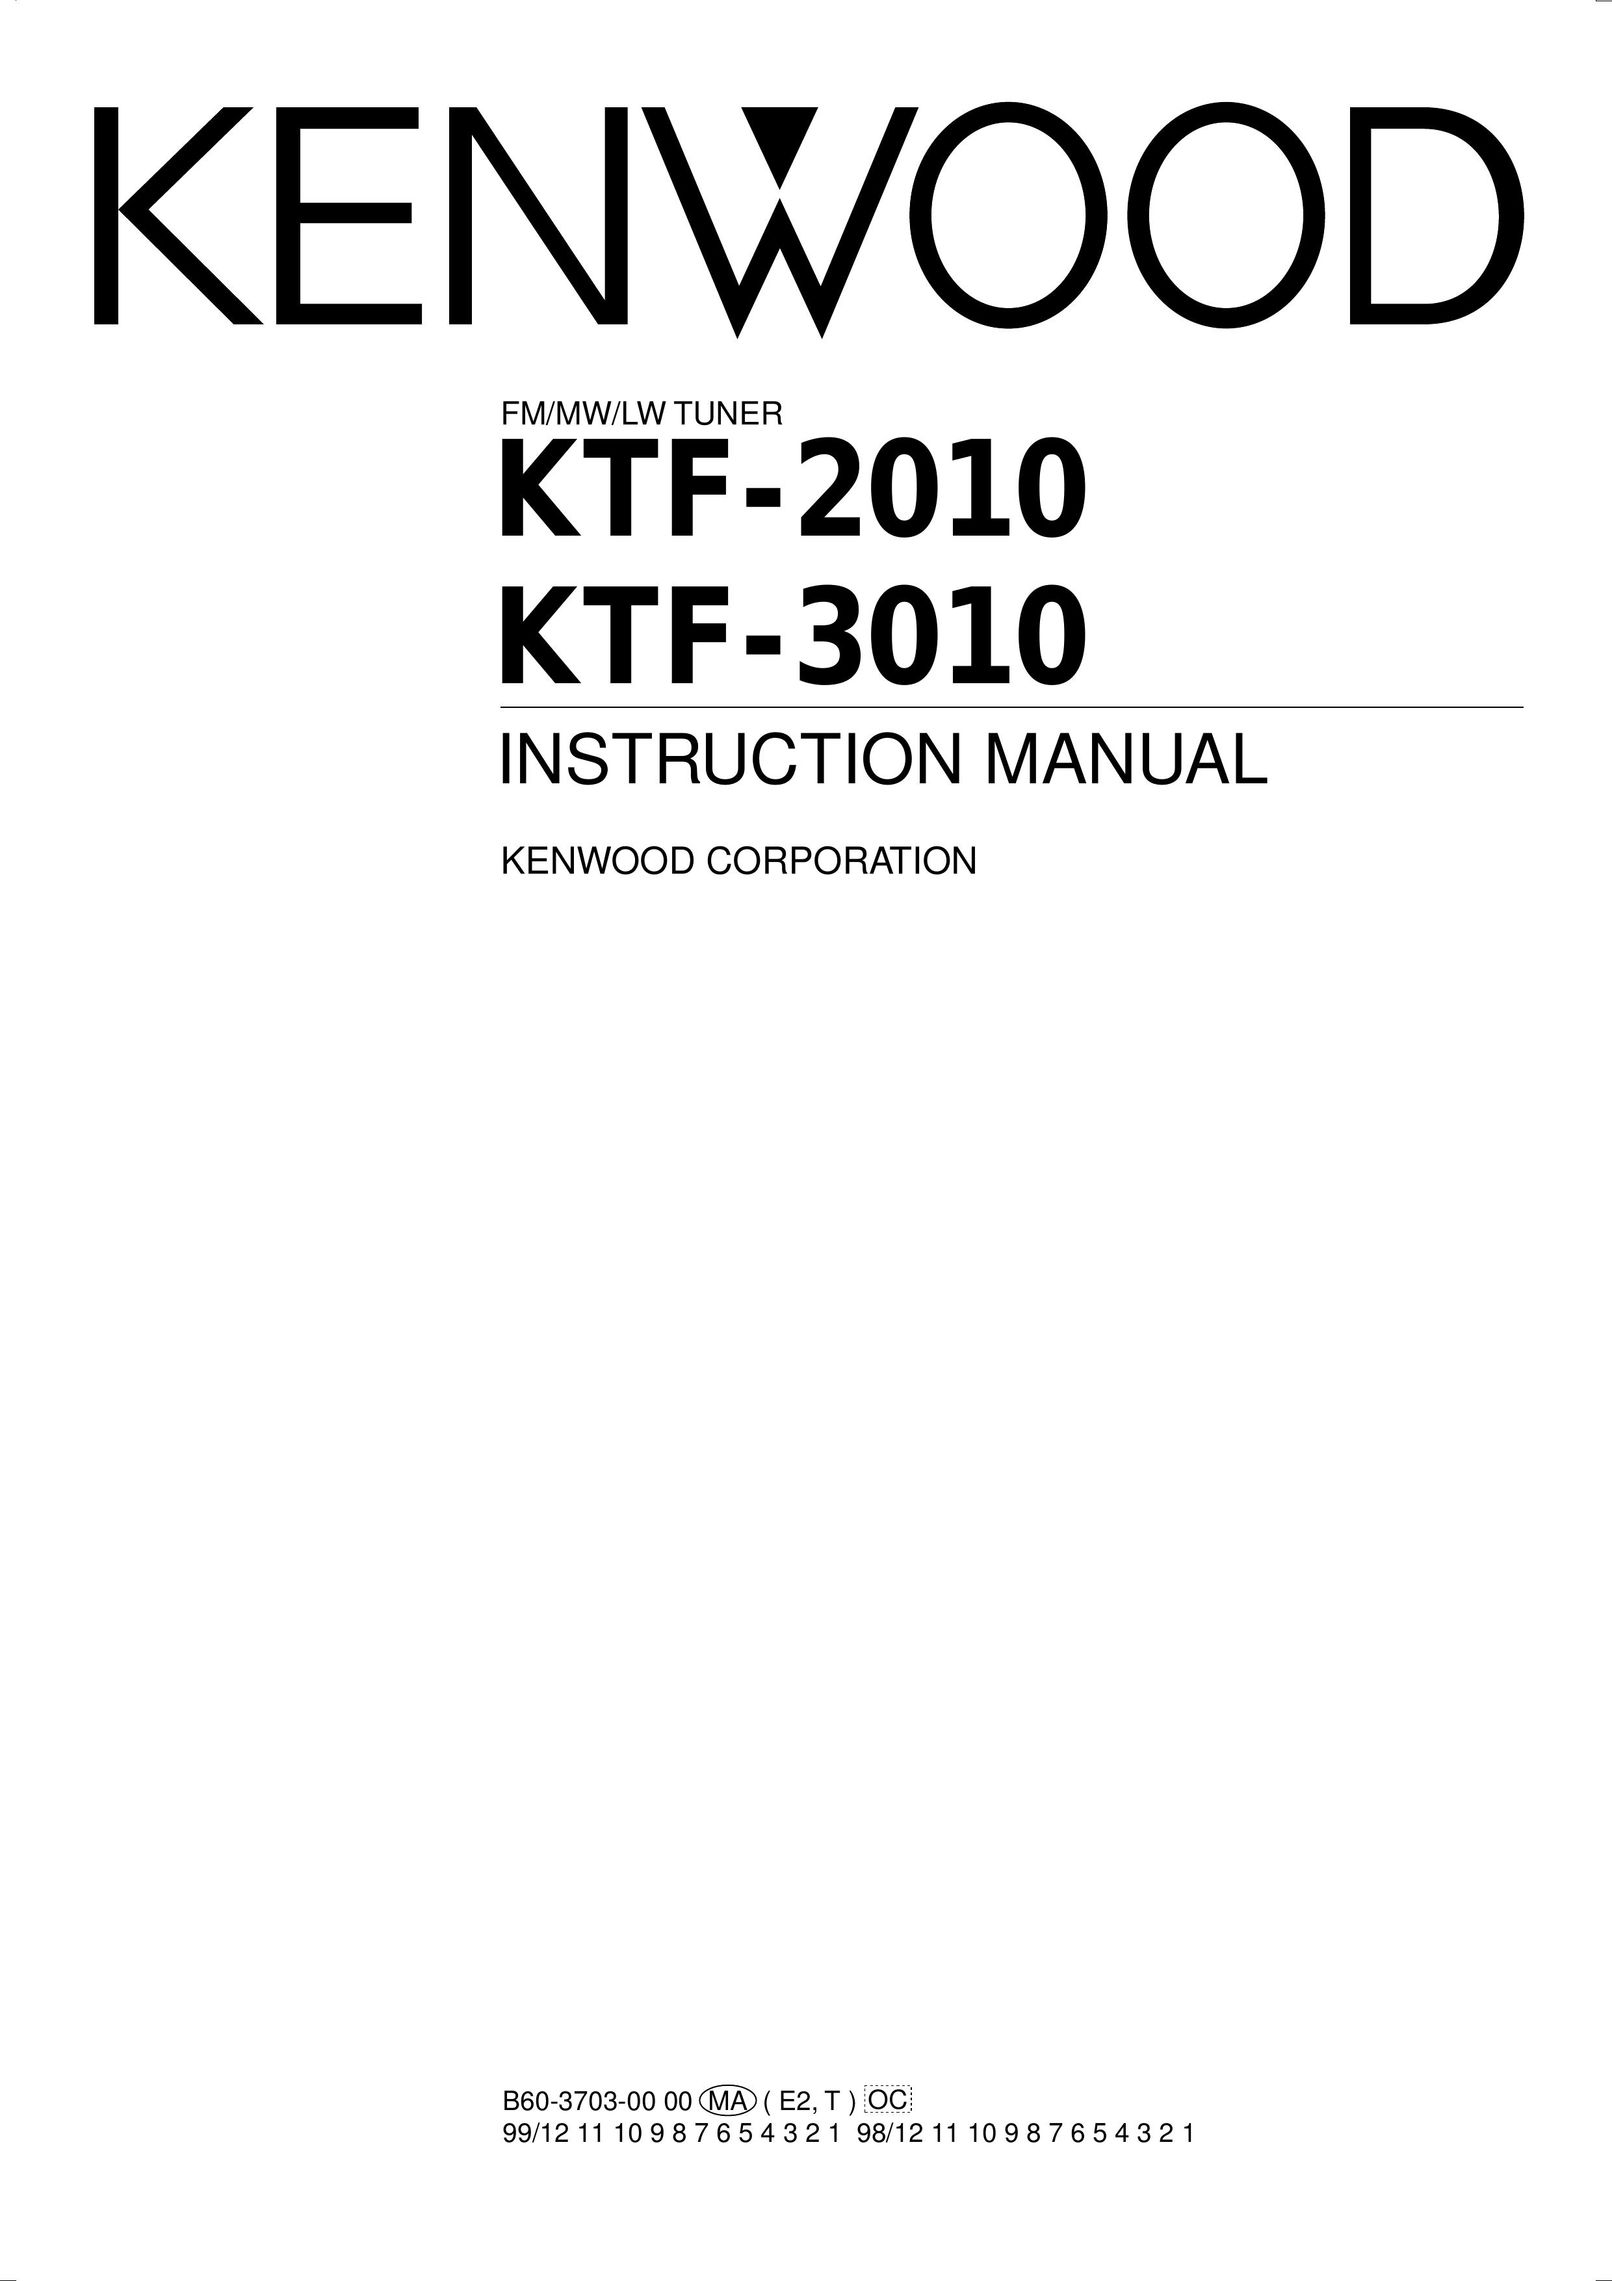 Kenwood KTF-2010 Radio User Manual